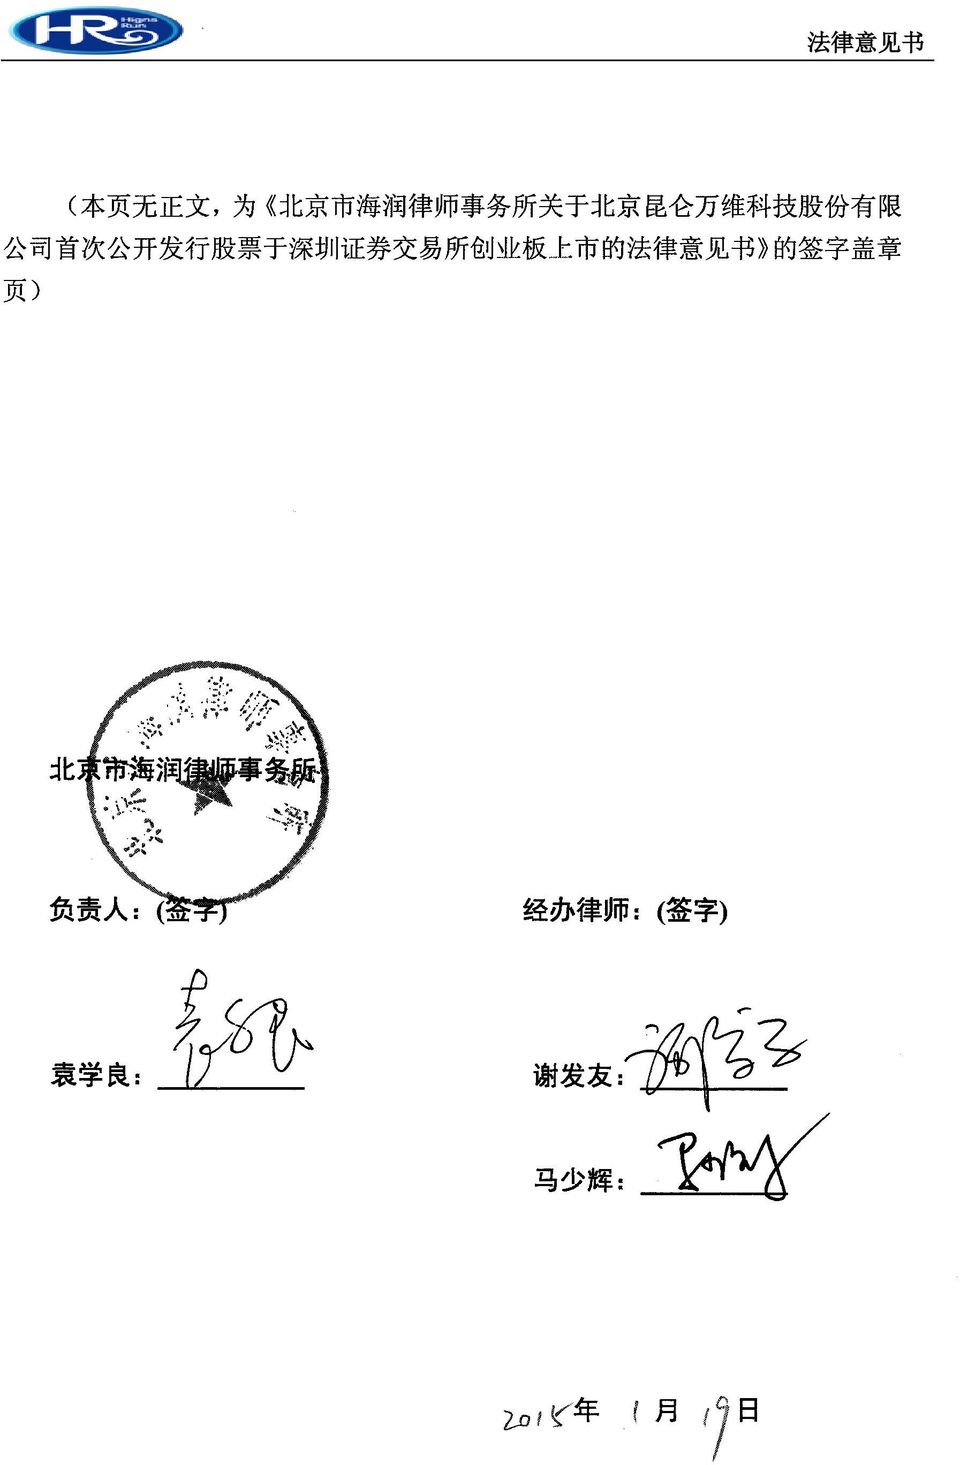 市 的 法 律 意 见 书 的 签 字 盖 章 页 ) 北 京 市 海 润 律 师 事 务 所 负 责 人